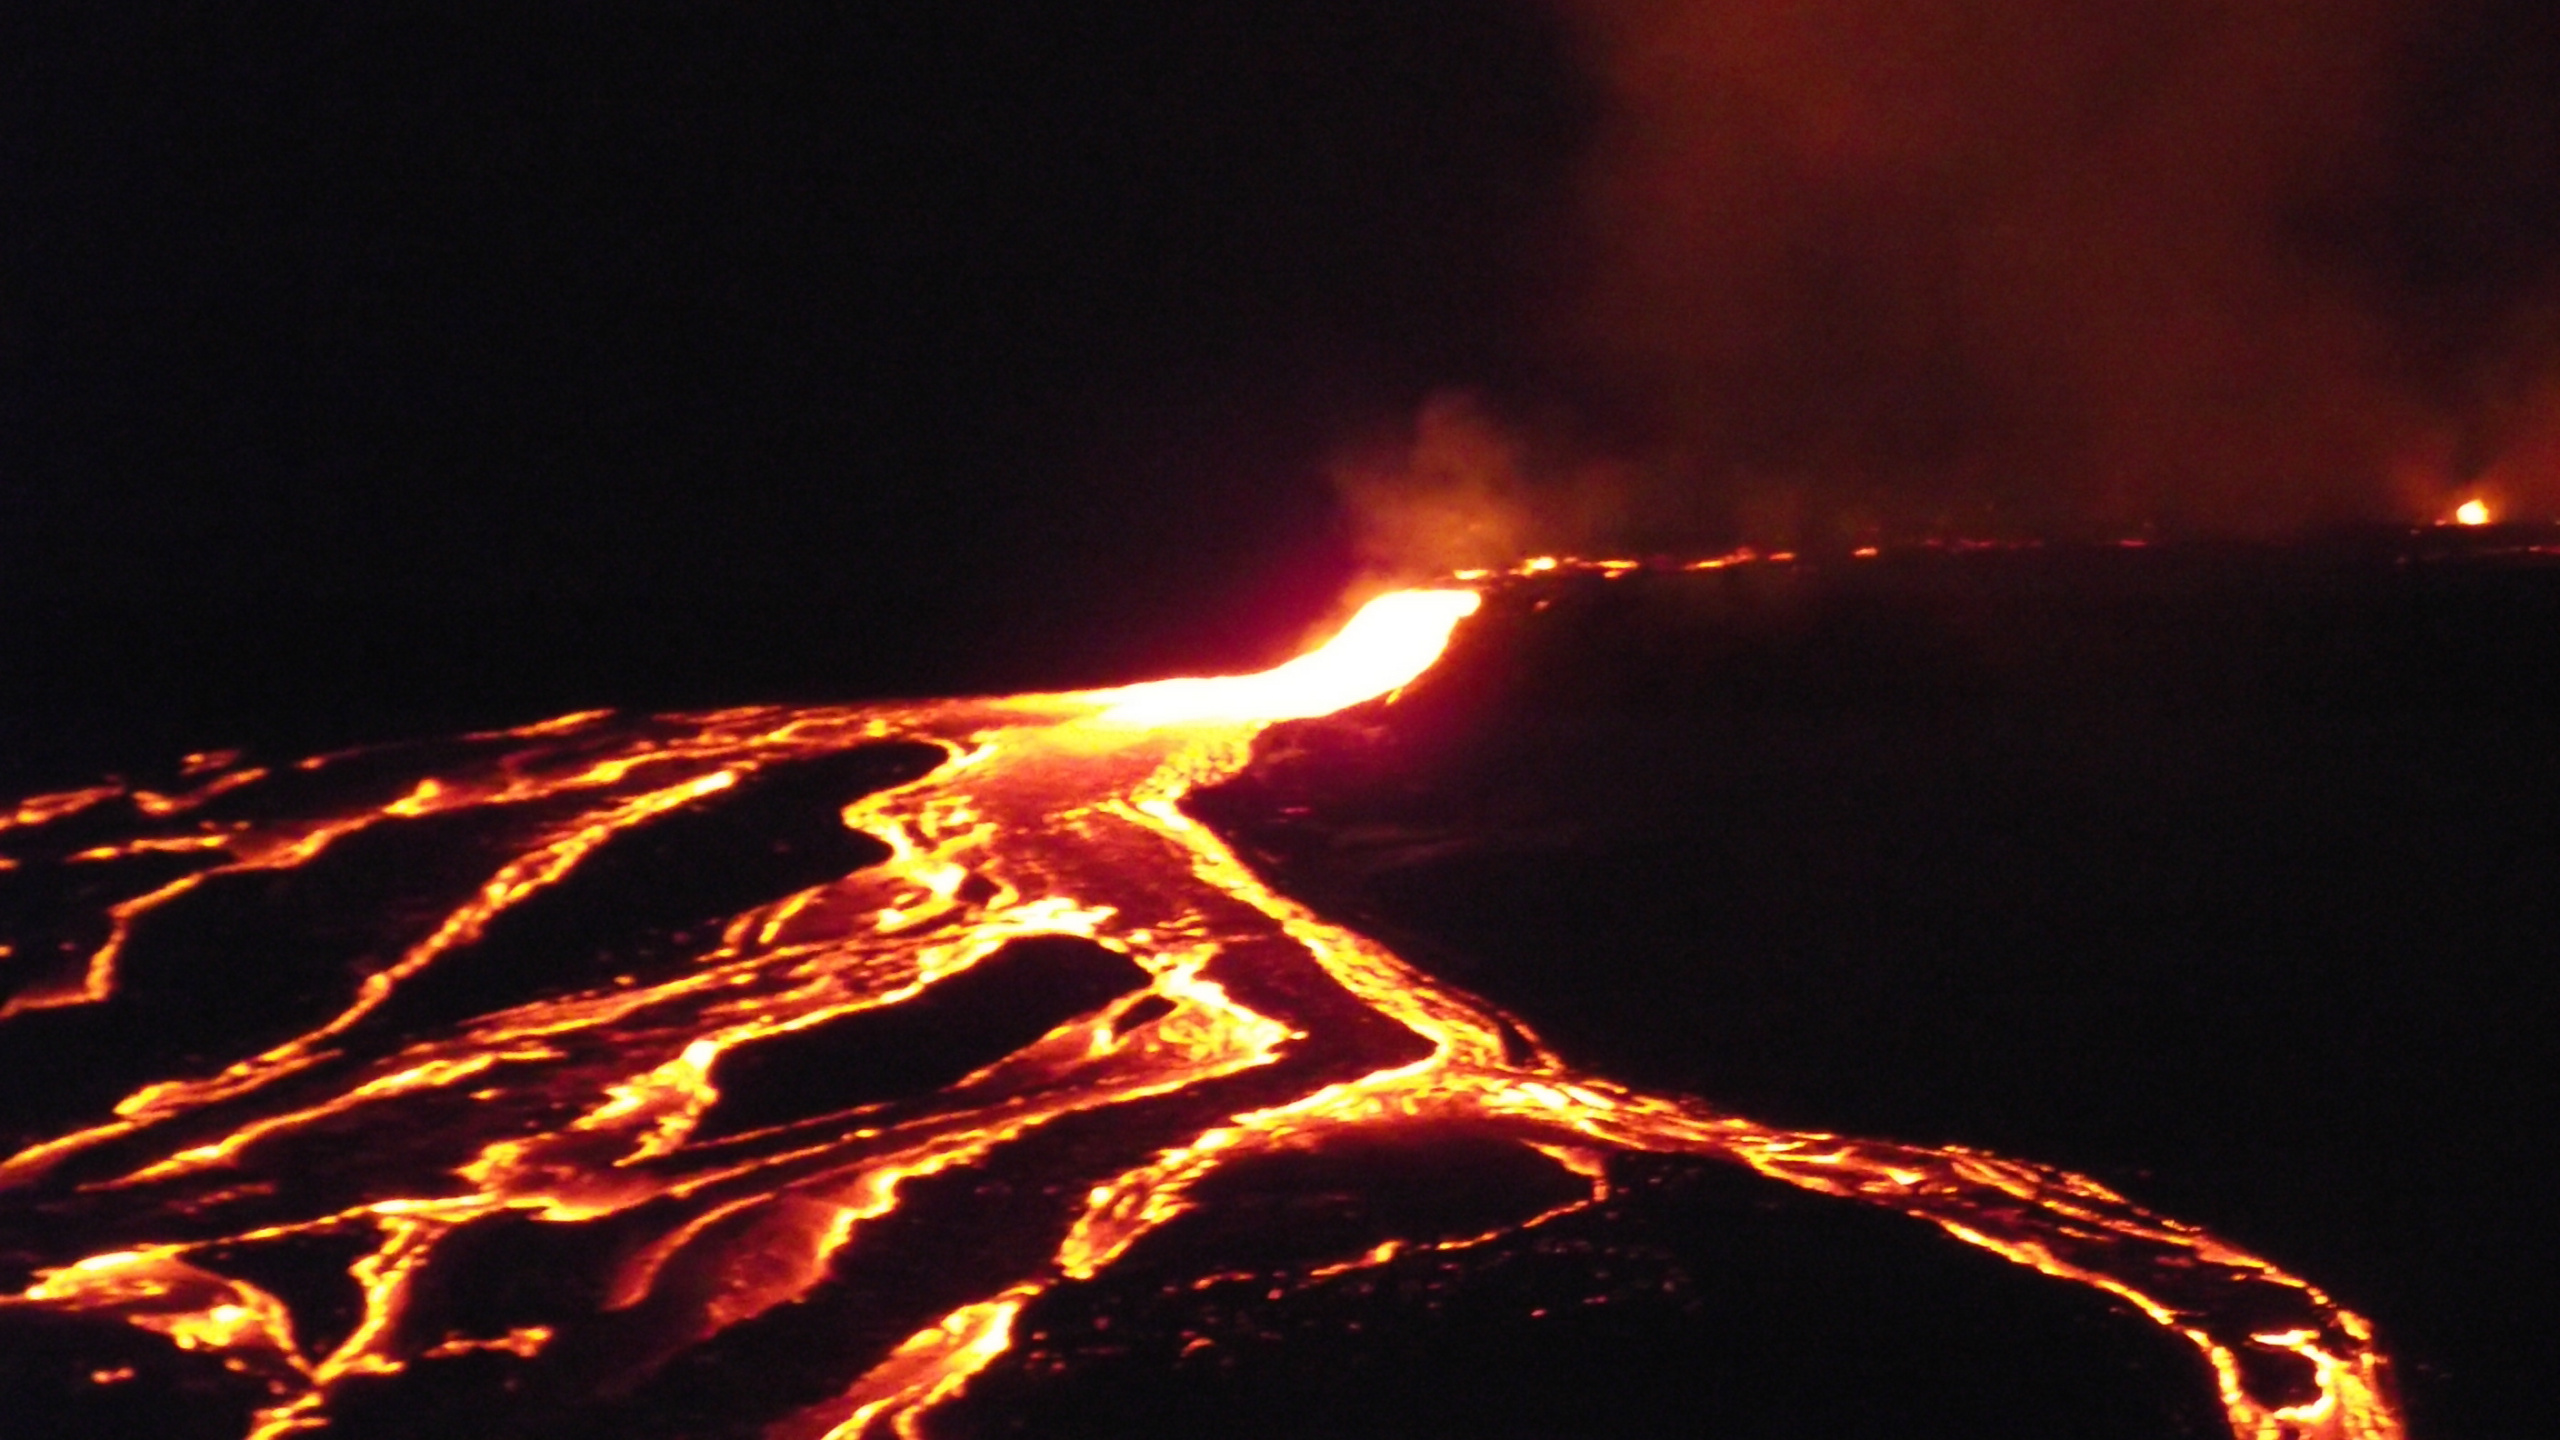 热, 熔岩, 篝火, 类型的火山爆发, 熔岩圆顶 壁纸 2560x1440 允许